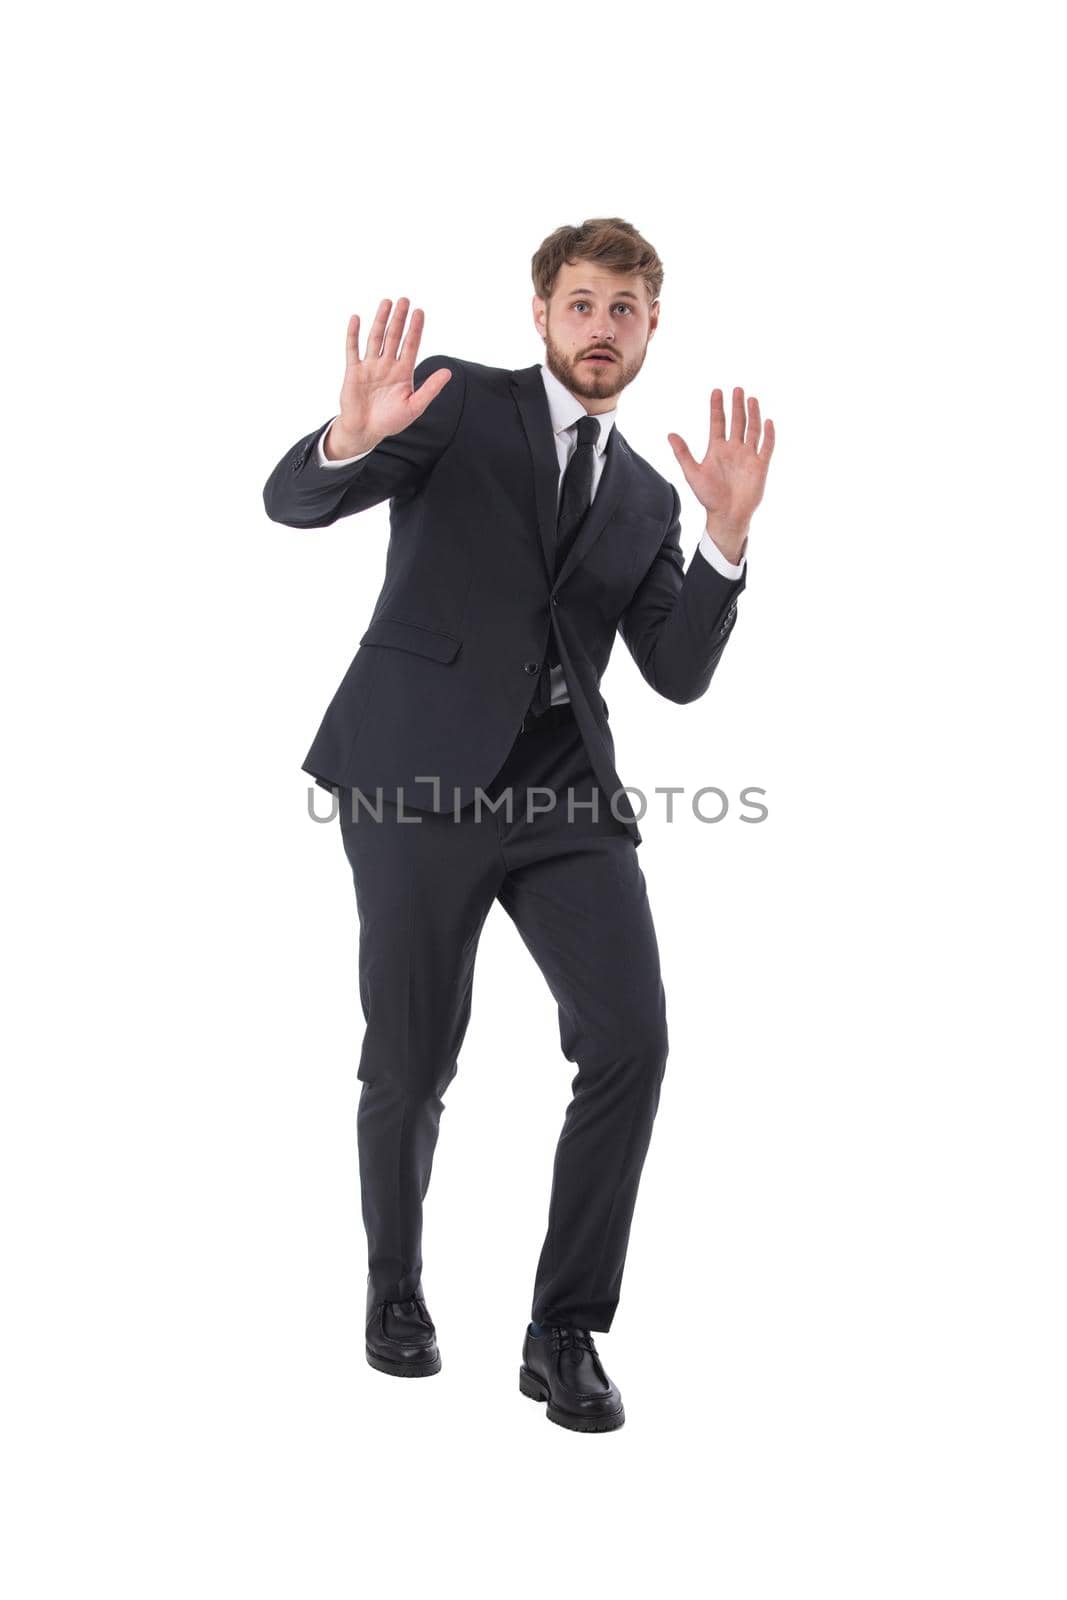 Business man stop gesture by ALotOfPeople